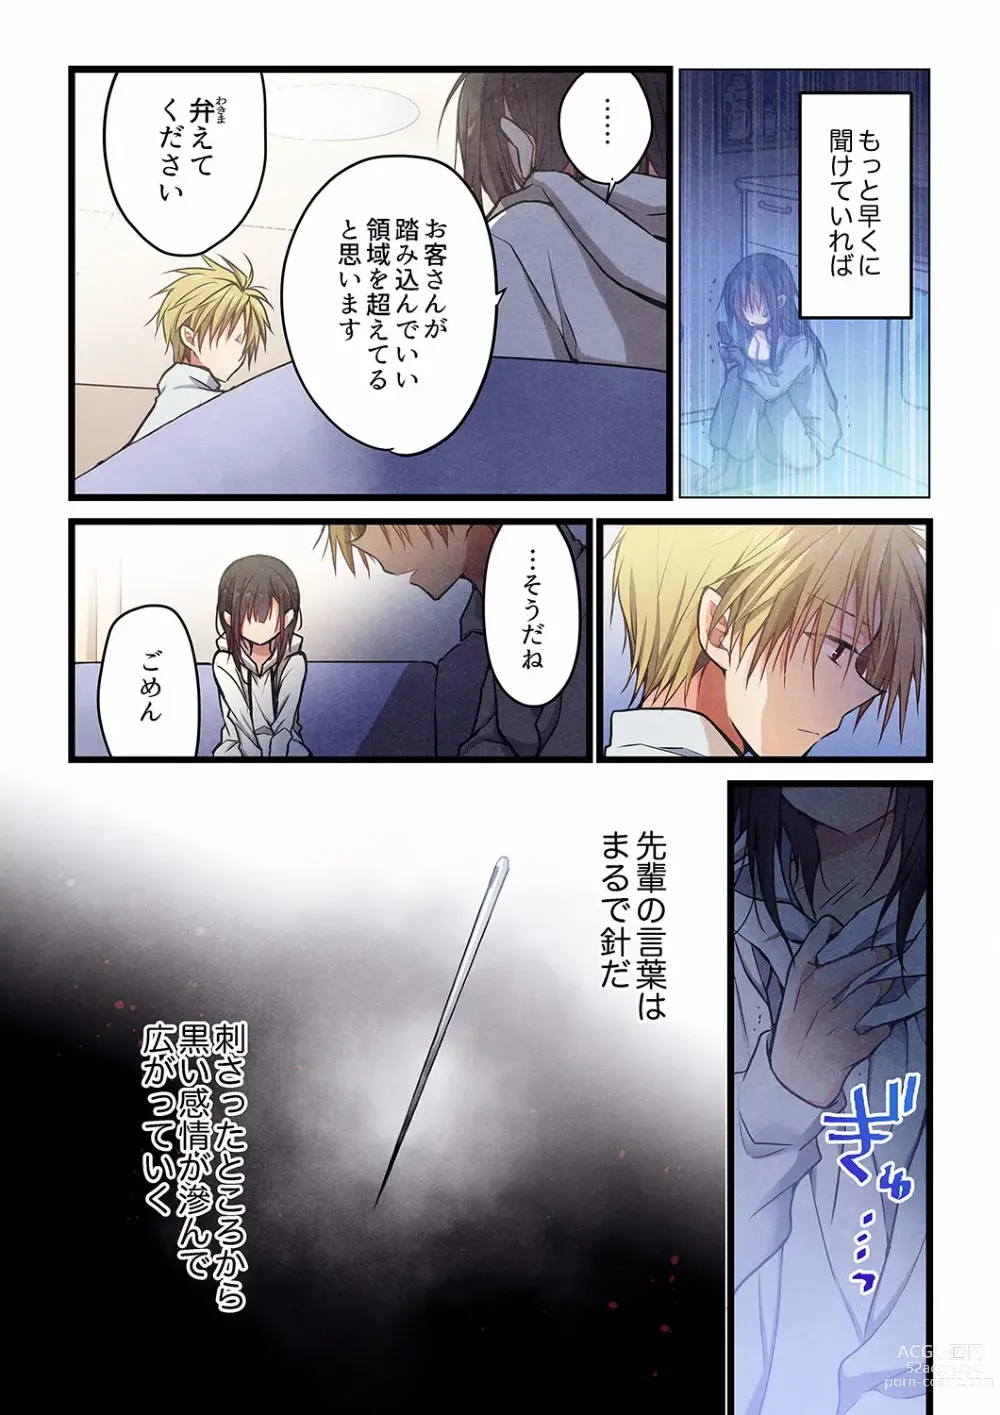 Page 14 of manga Kimi ga Sore o Ai to Yonde mo - Even if you call it love 29